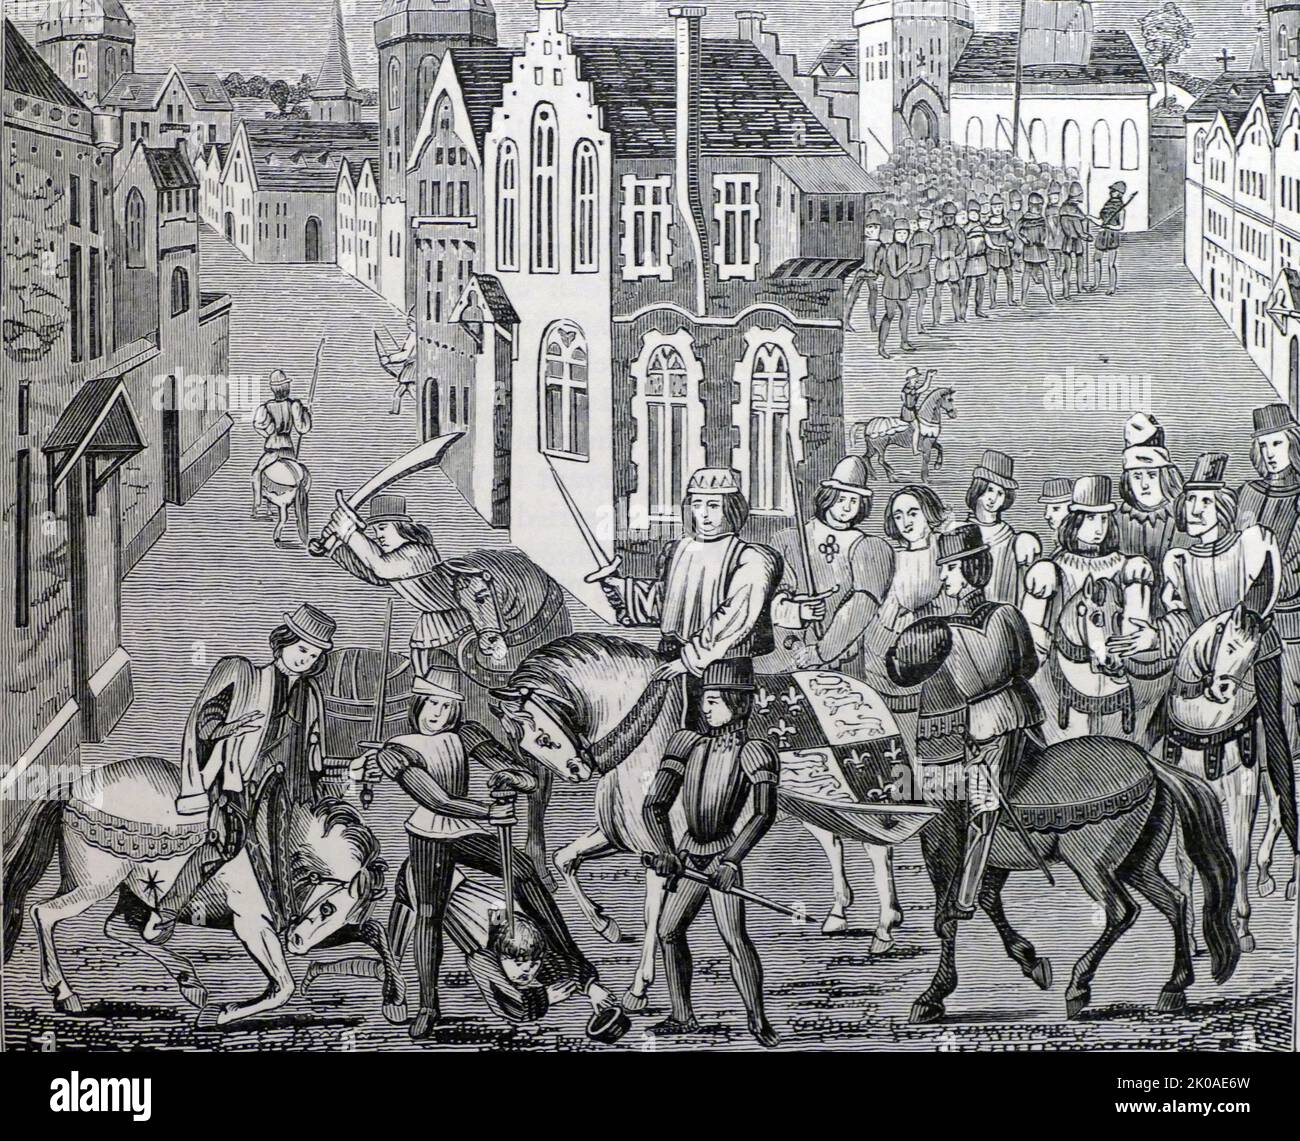 Wat Tyler, chef de la révolte des paysans, assassiné par Walworth, maire de Londres, lors de négociations avec le roi Richard II à Smithfield, Londres, 1381 Banque D'Images